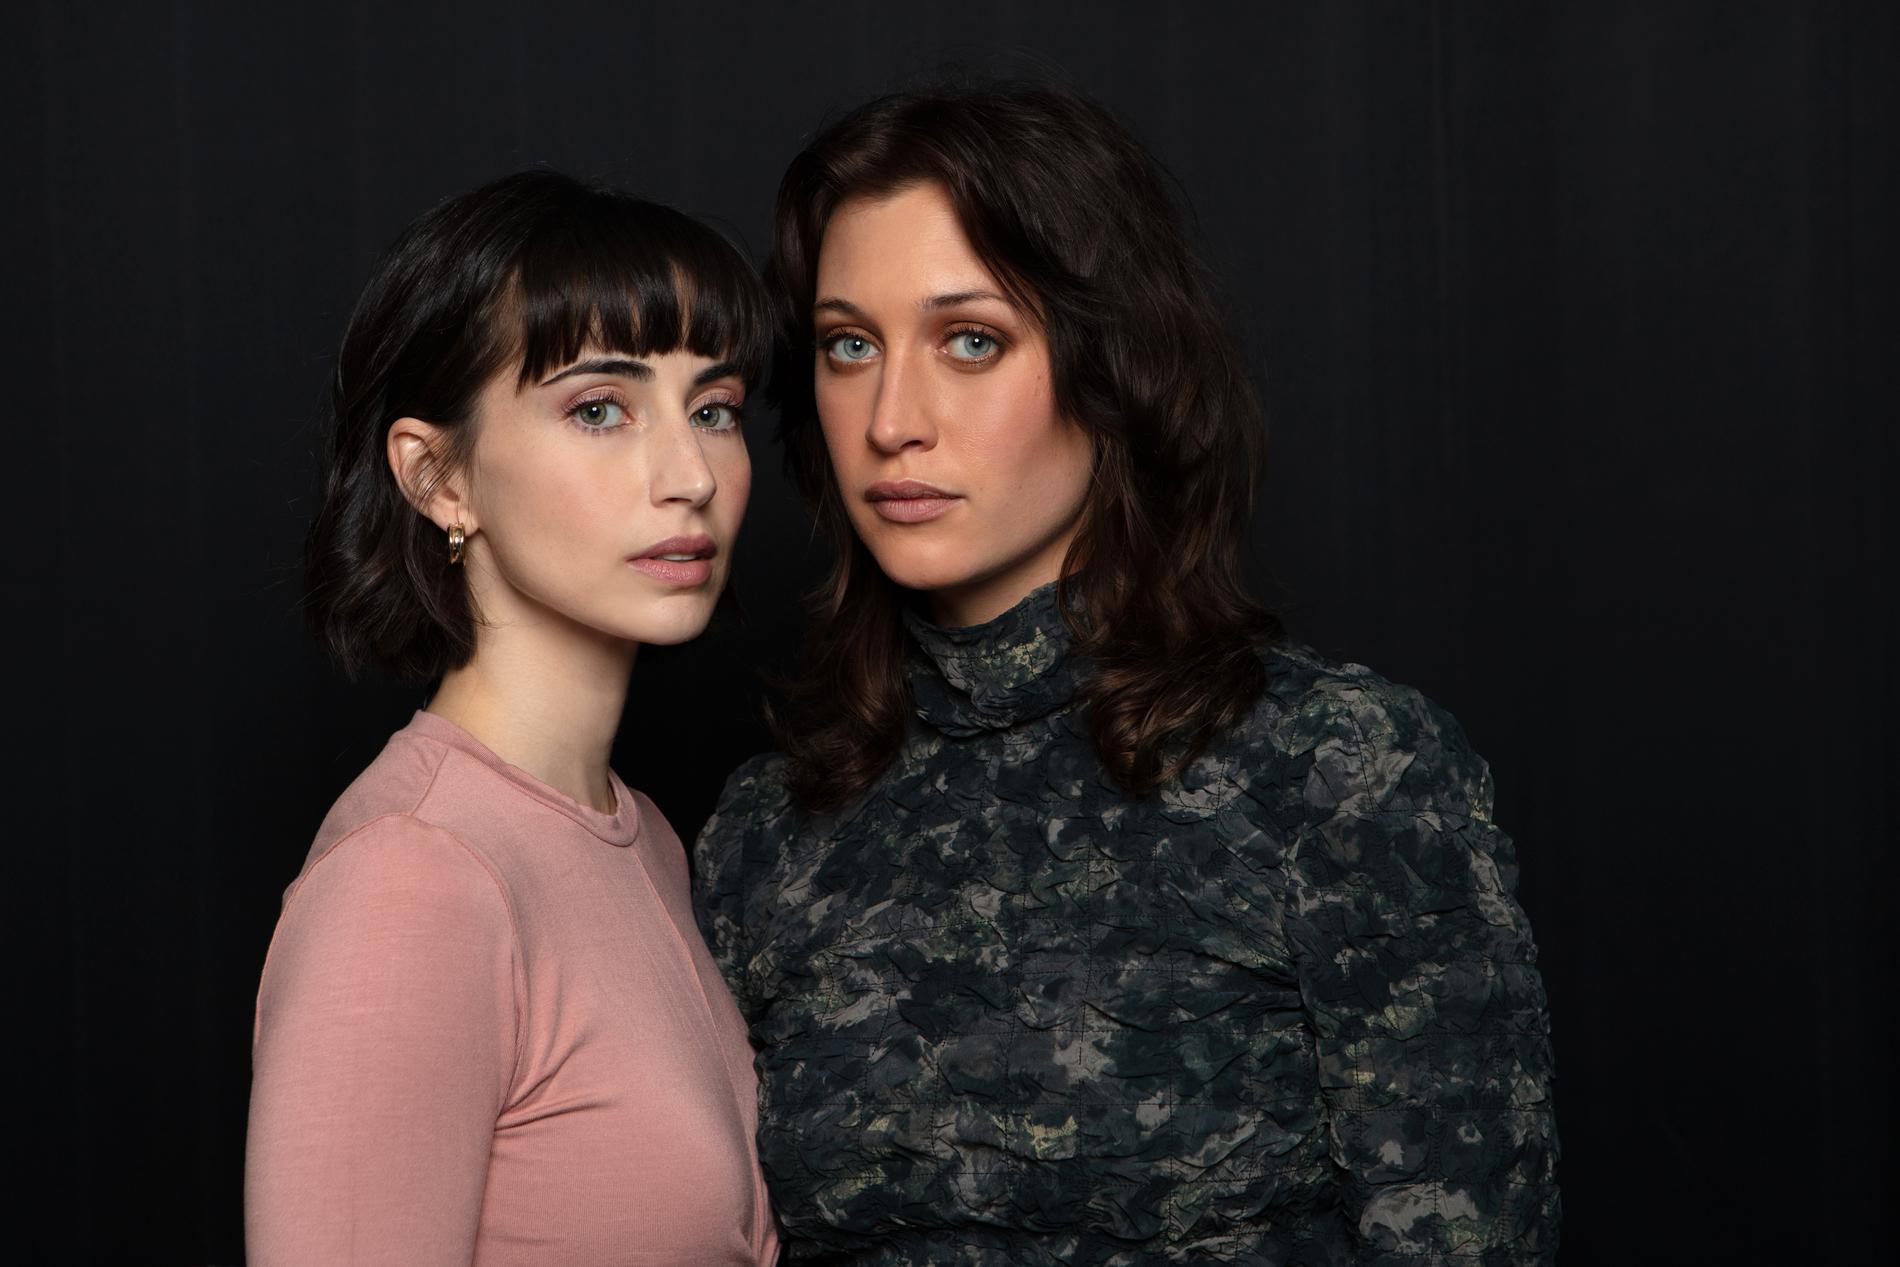 Dilan Gwyn (vänster) och Julia Ragnarsson spelar huvudrollerna i den kommande serien "Två systrar". Pressbild.